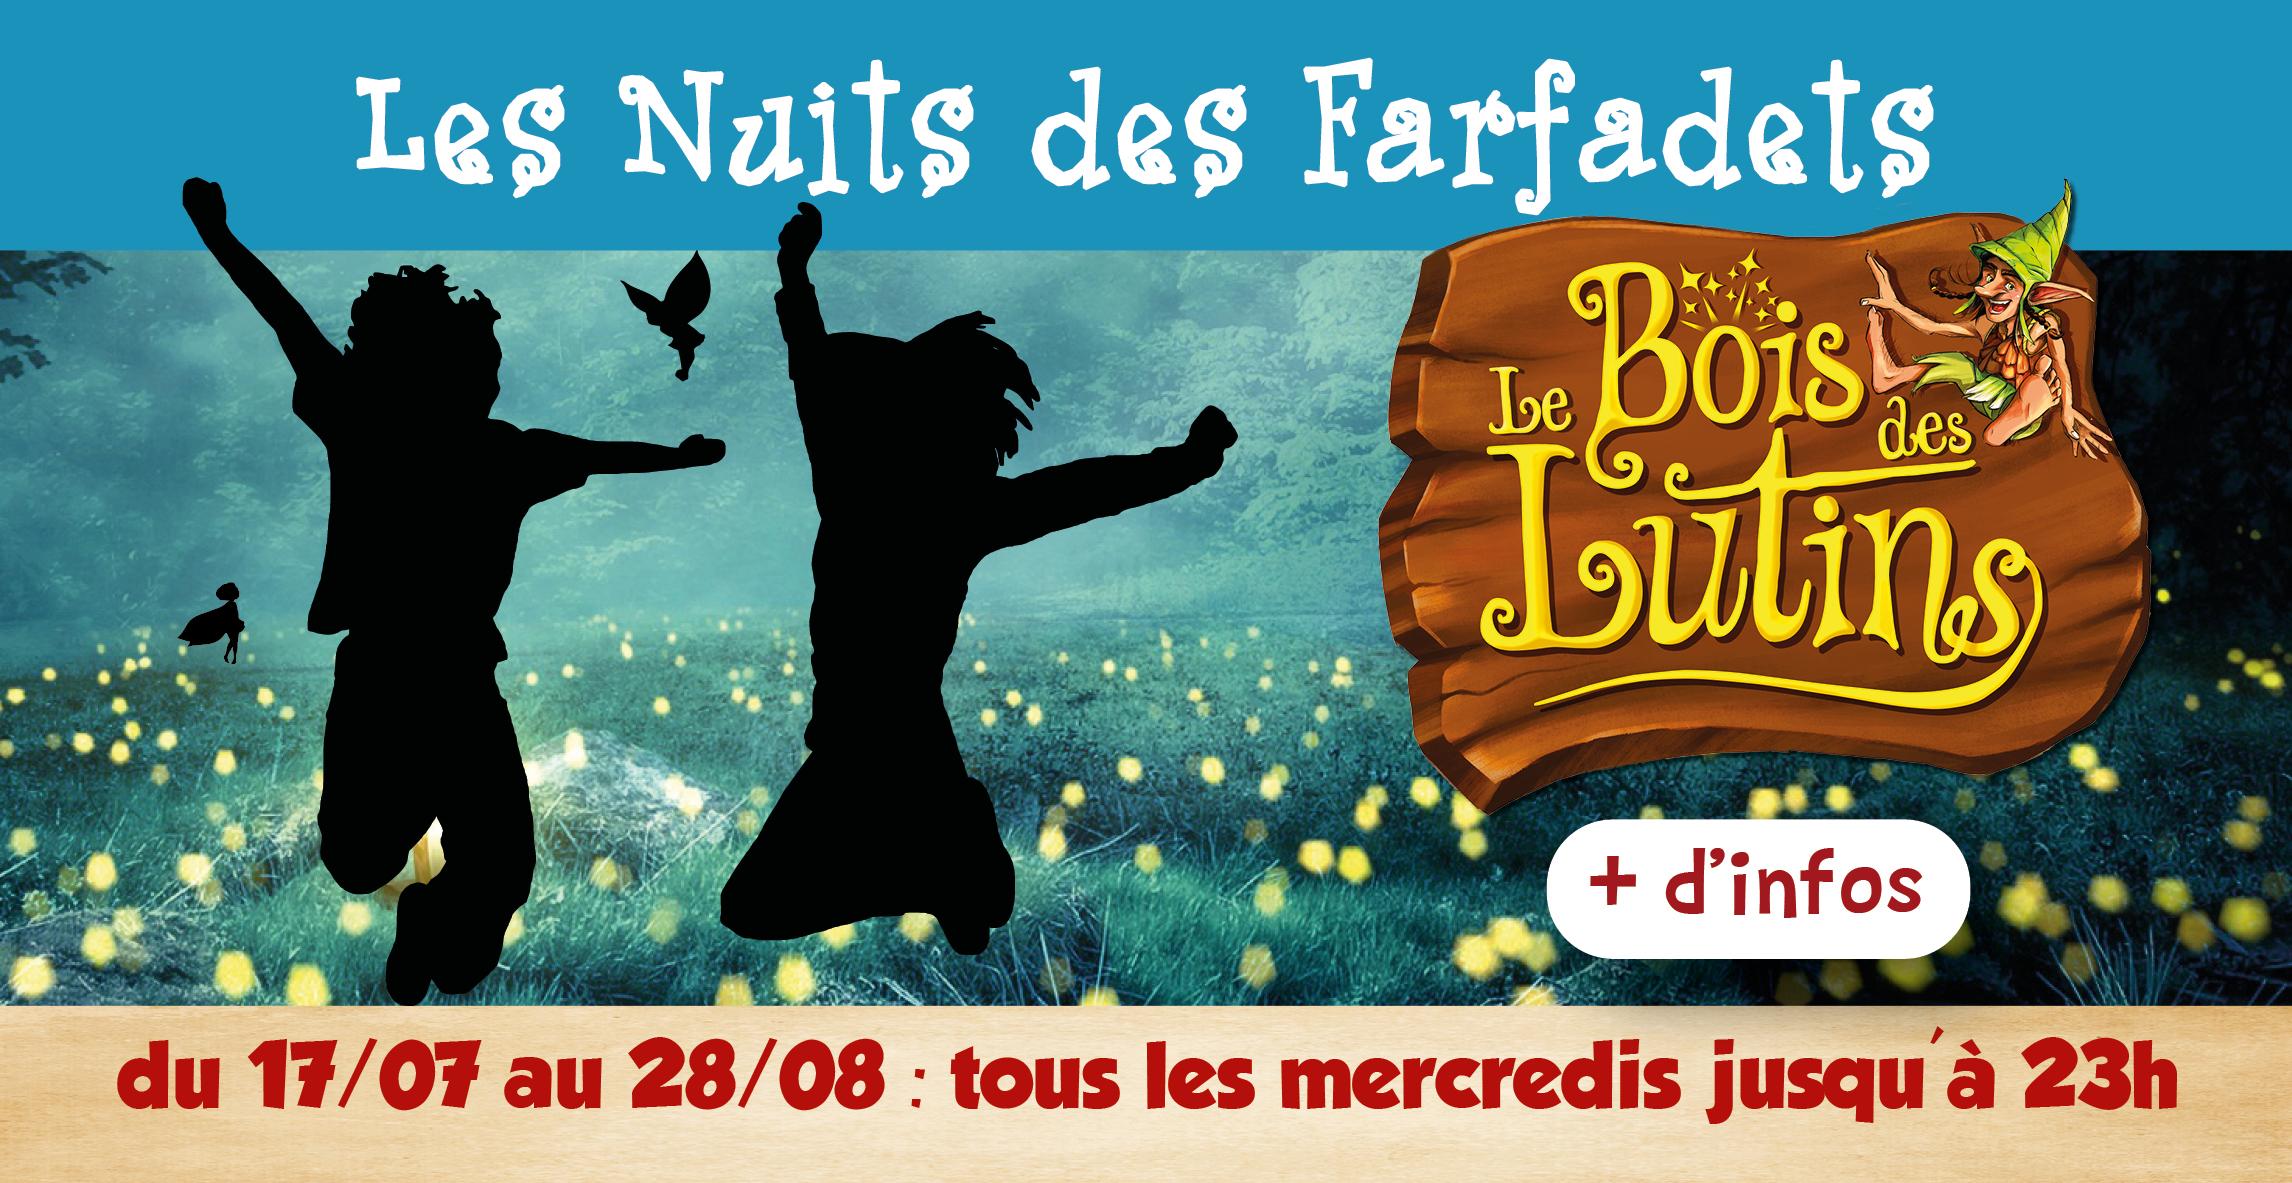 Nocturne : "La nuit des farfadets" au Bois des Lutins à Villeneuve-Loubet